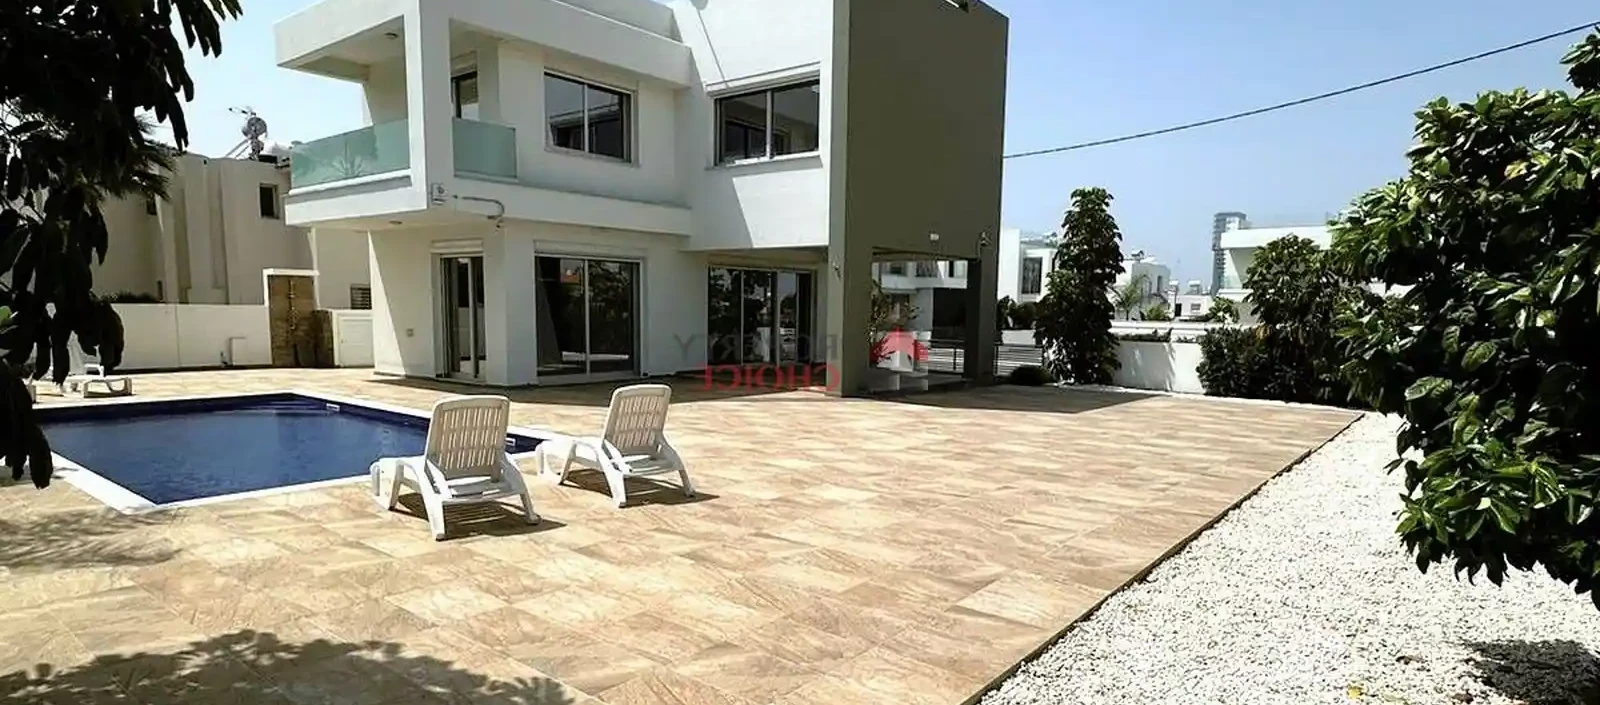 3-bedroom villa to rent €2.300, image 1